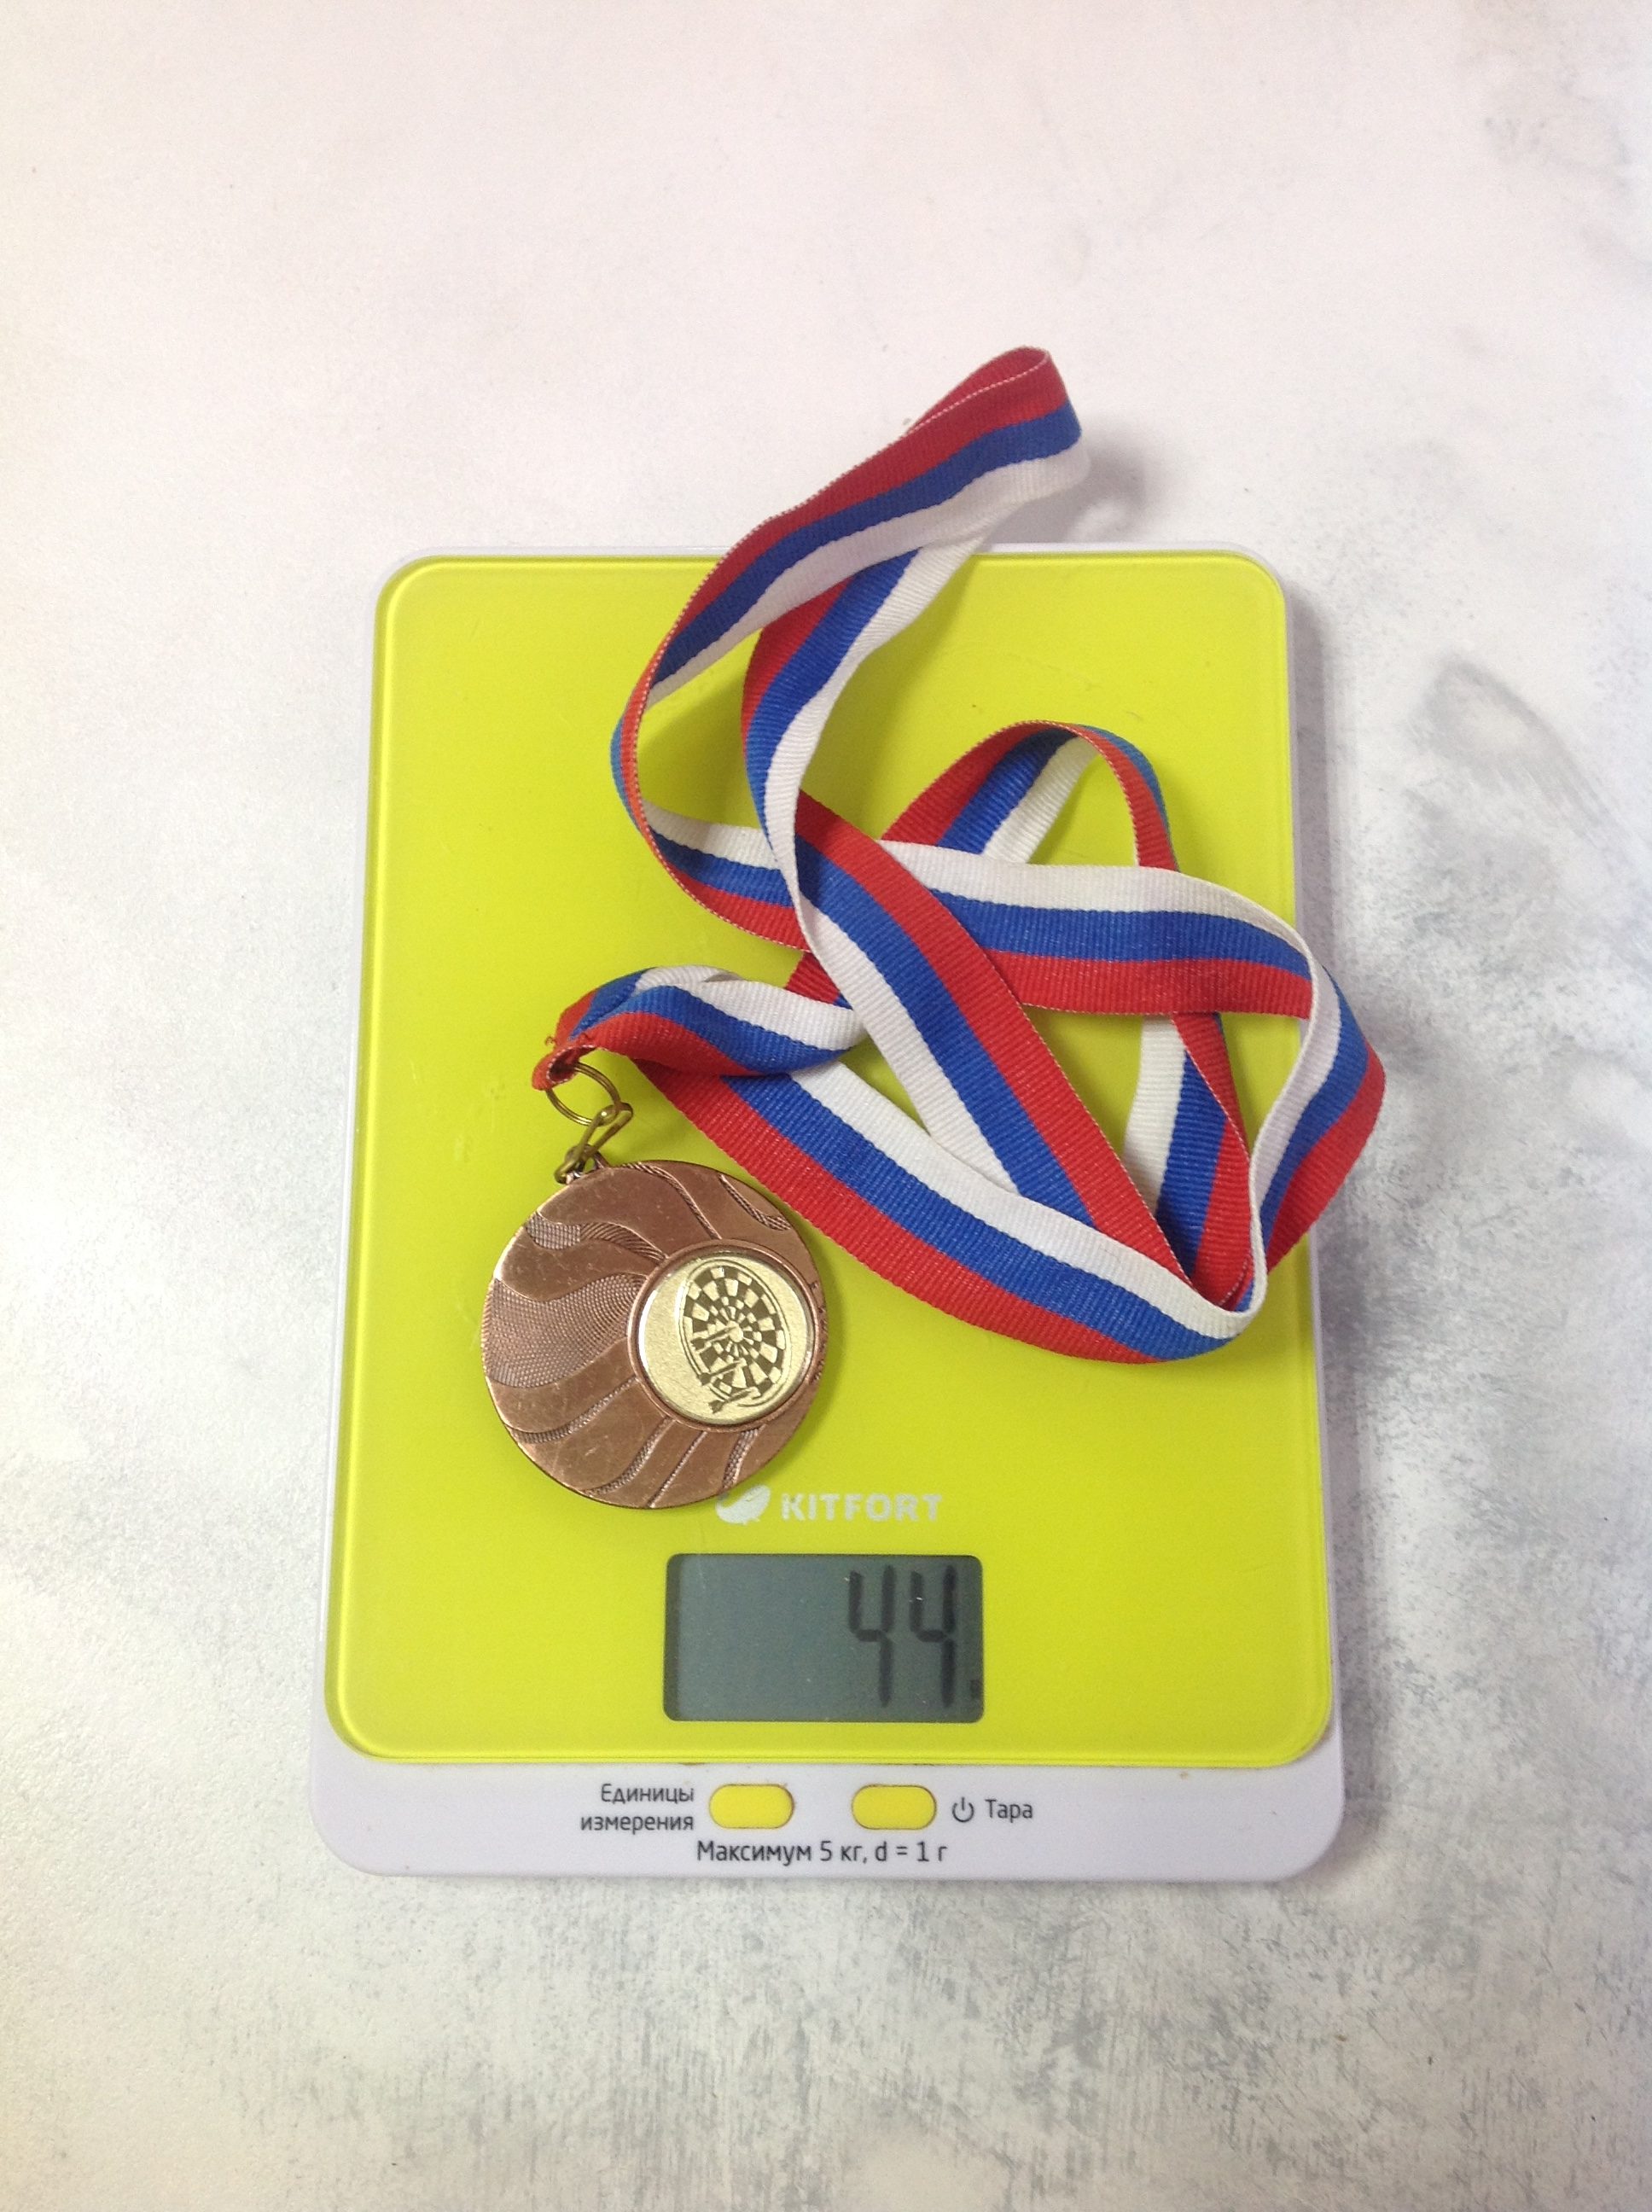 Bir spor madalyasının ağırlığı ne kadardır?